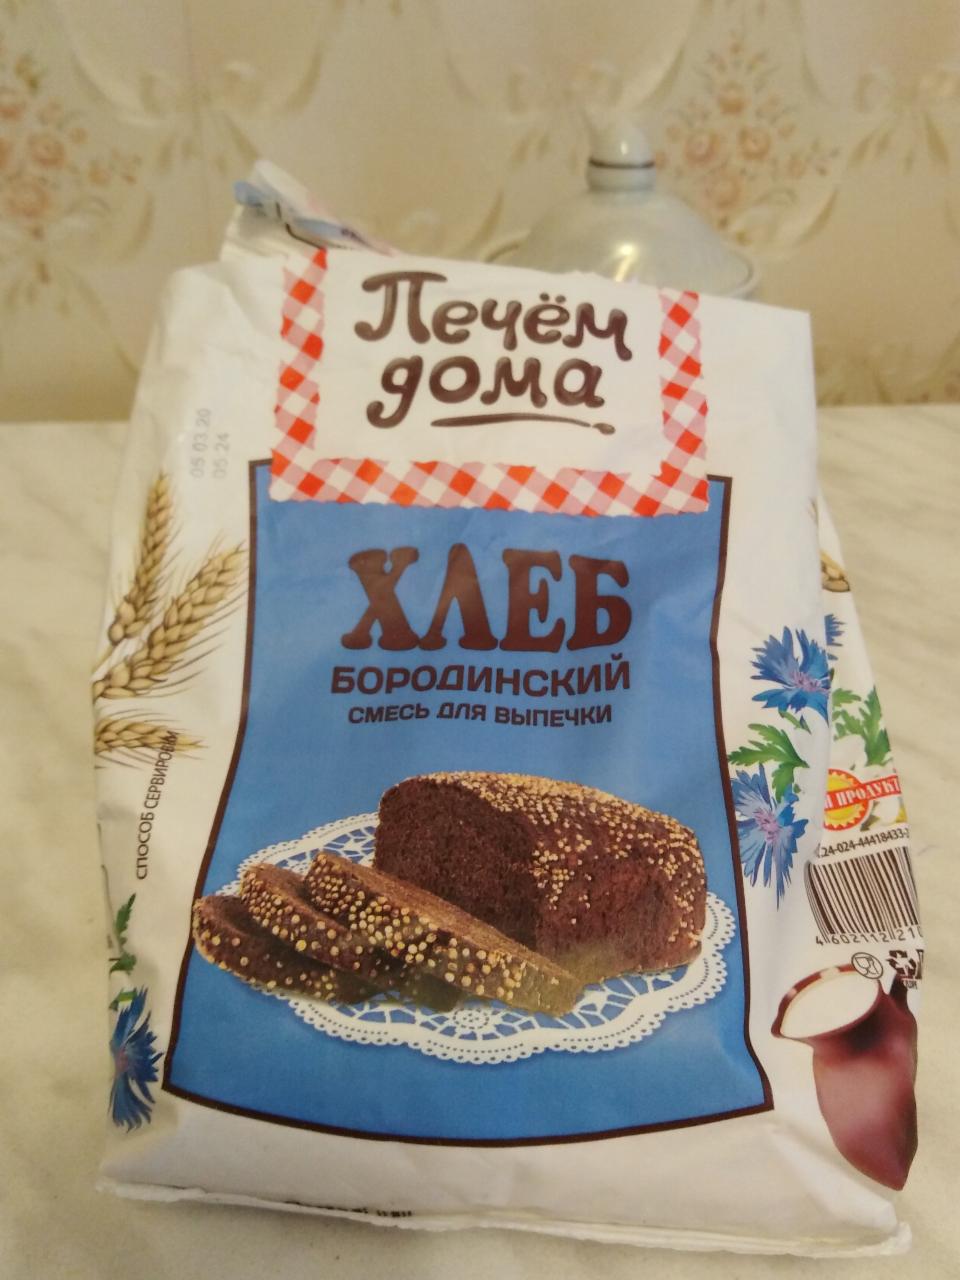 Фото - Хлеб Бородинский смесь для выпечки Печём дома